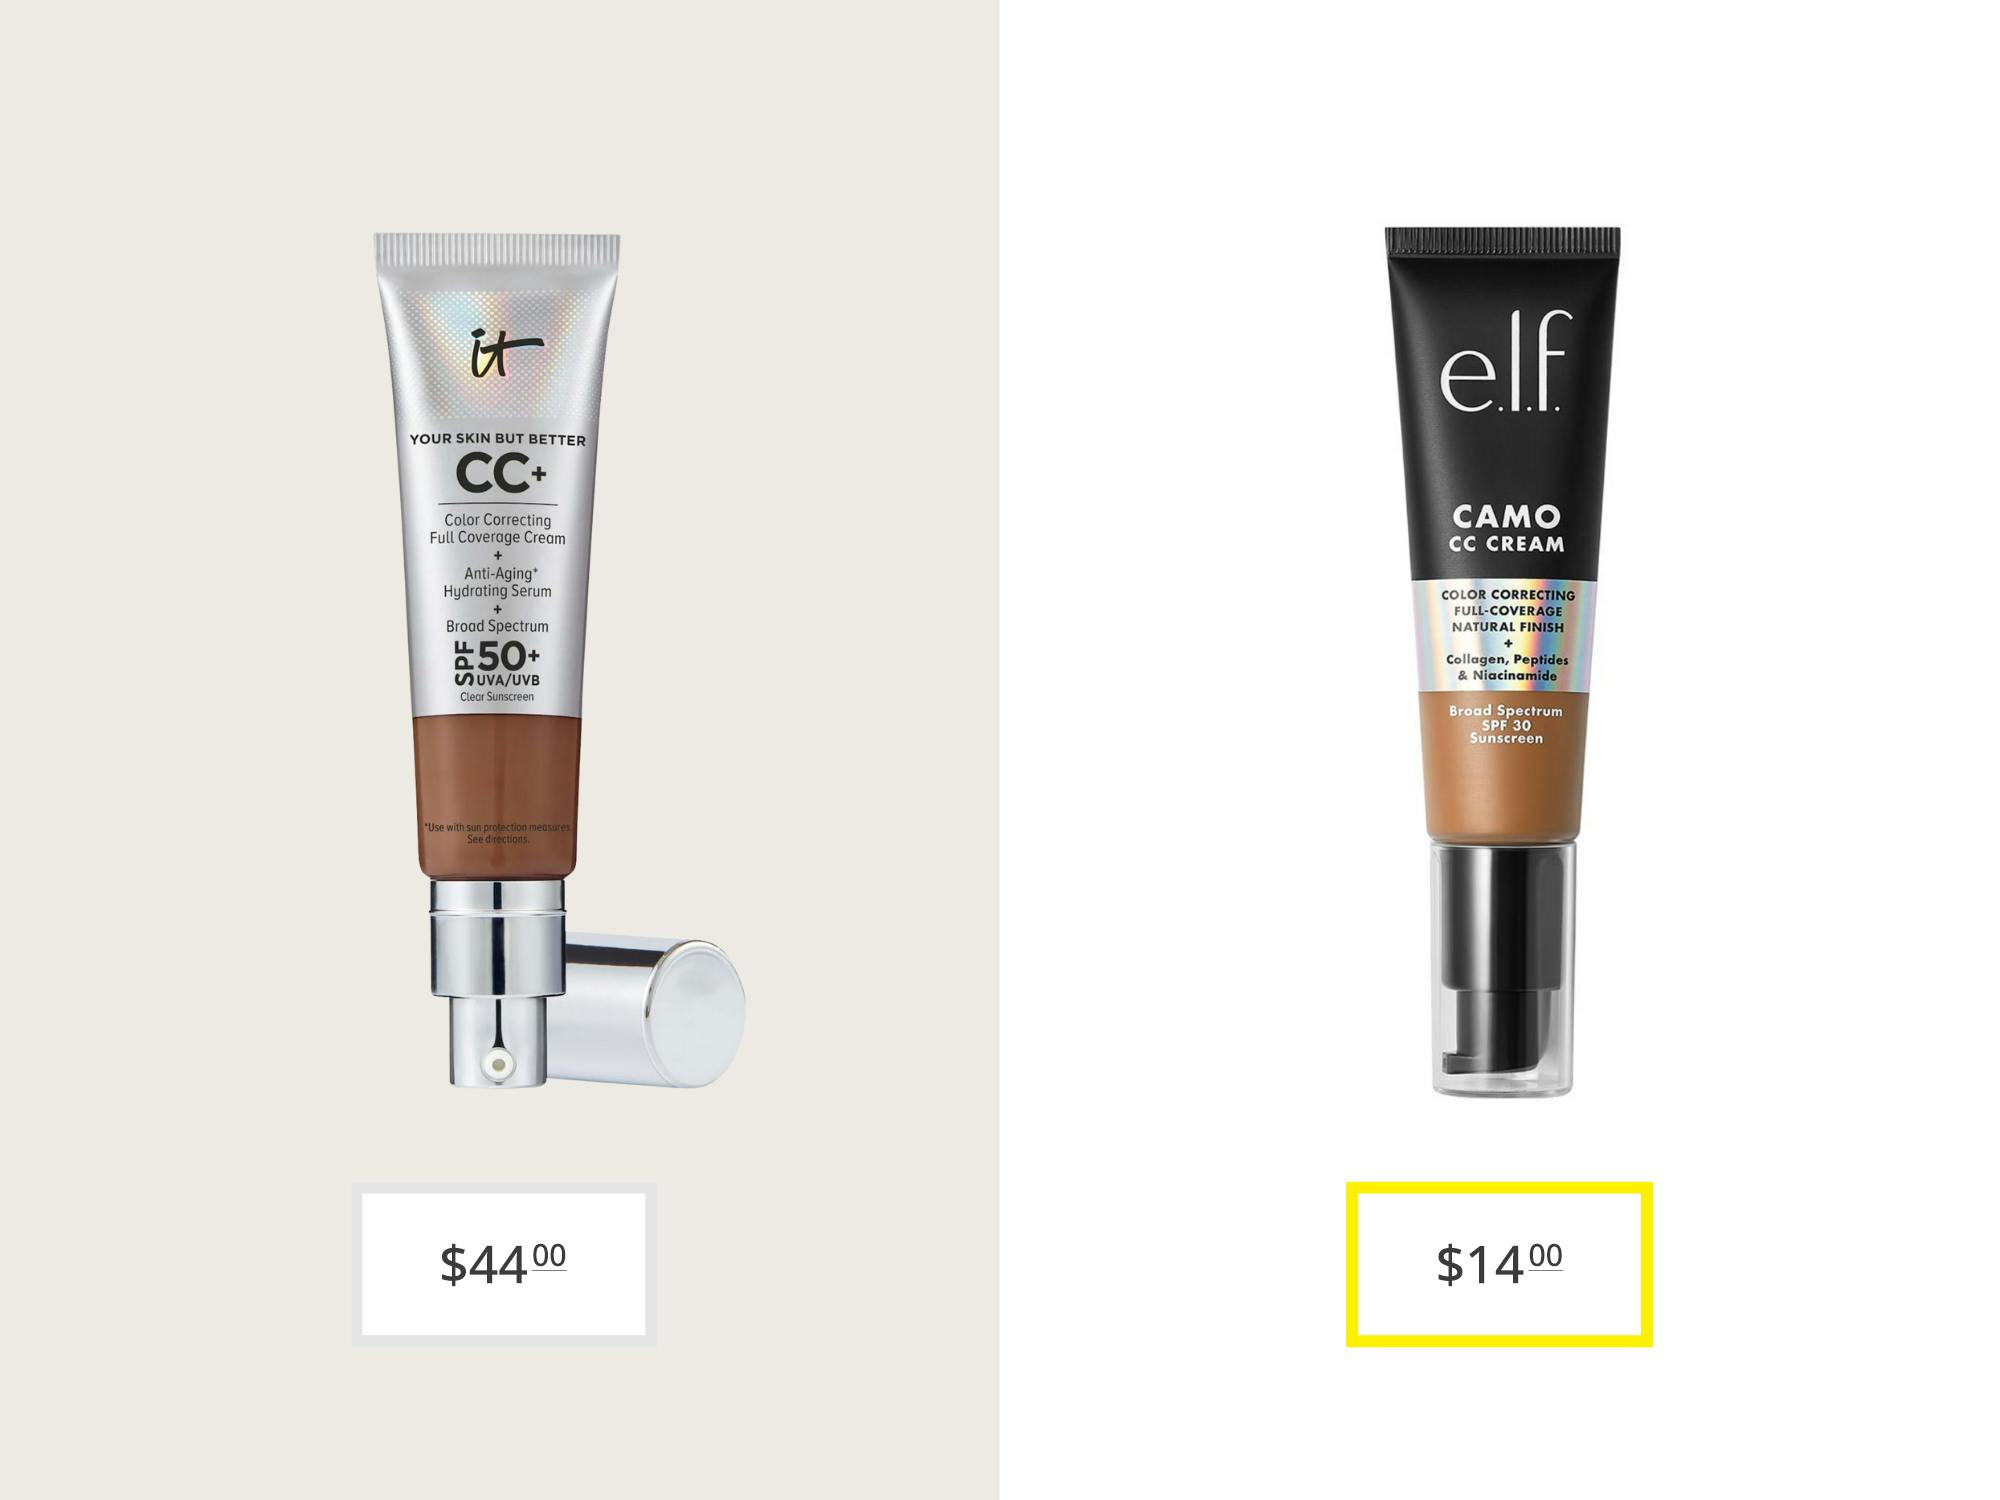 it cosmetics cc plus cream full coverage foundation and e.l.f. camo cc cream price comparison graphic